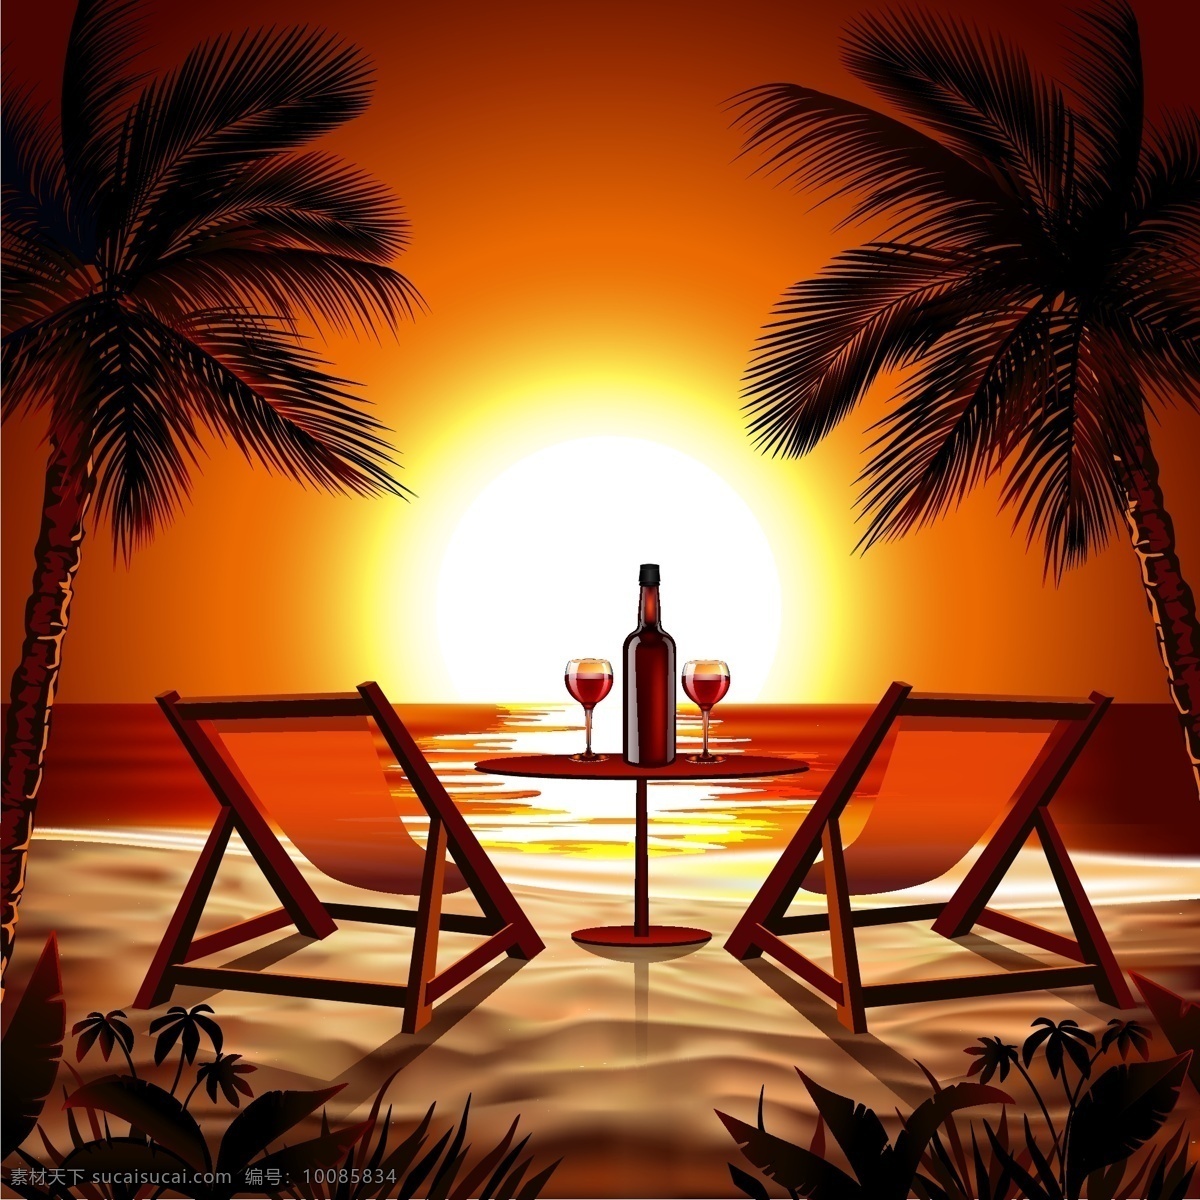 椰子树 大海 矢量图 热带 风景 夕阳 沙滩 躺椅 香槟 度假